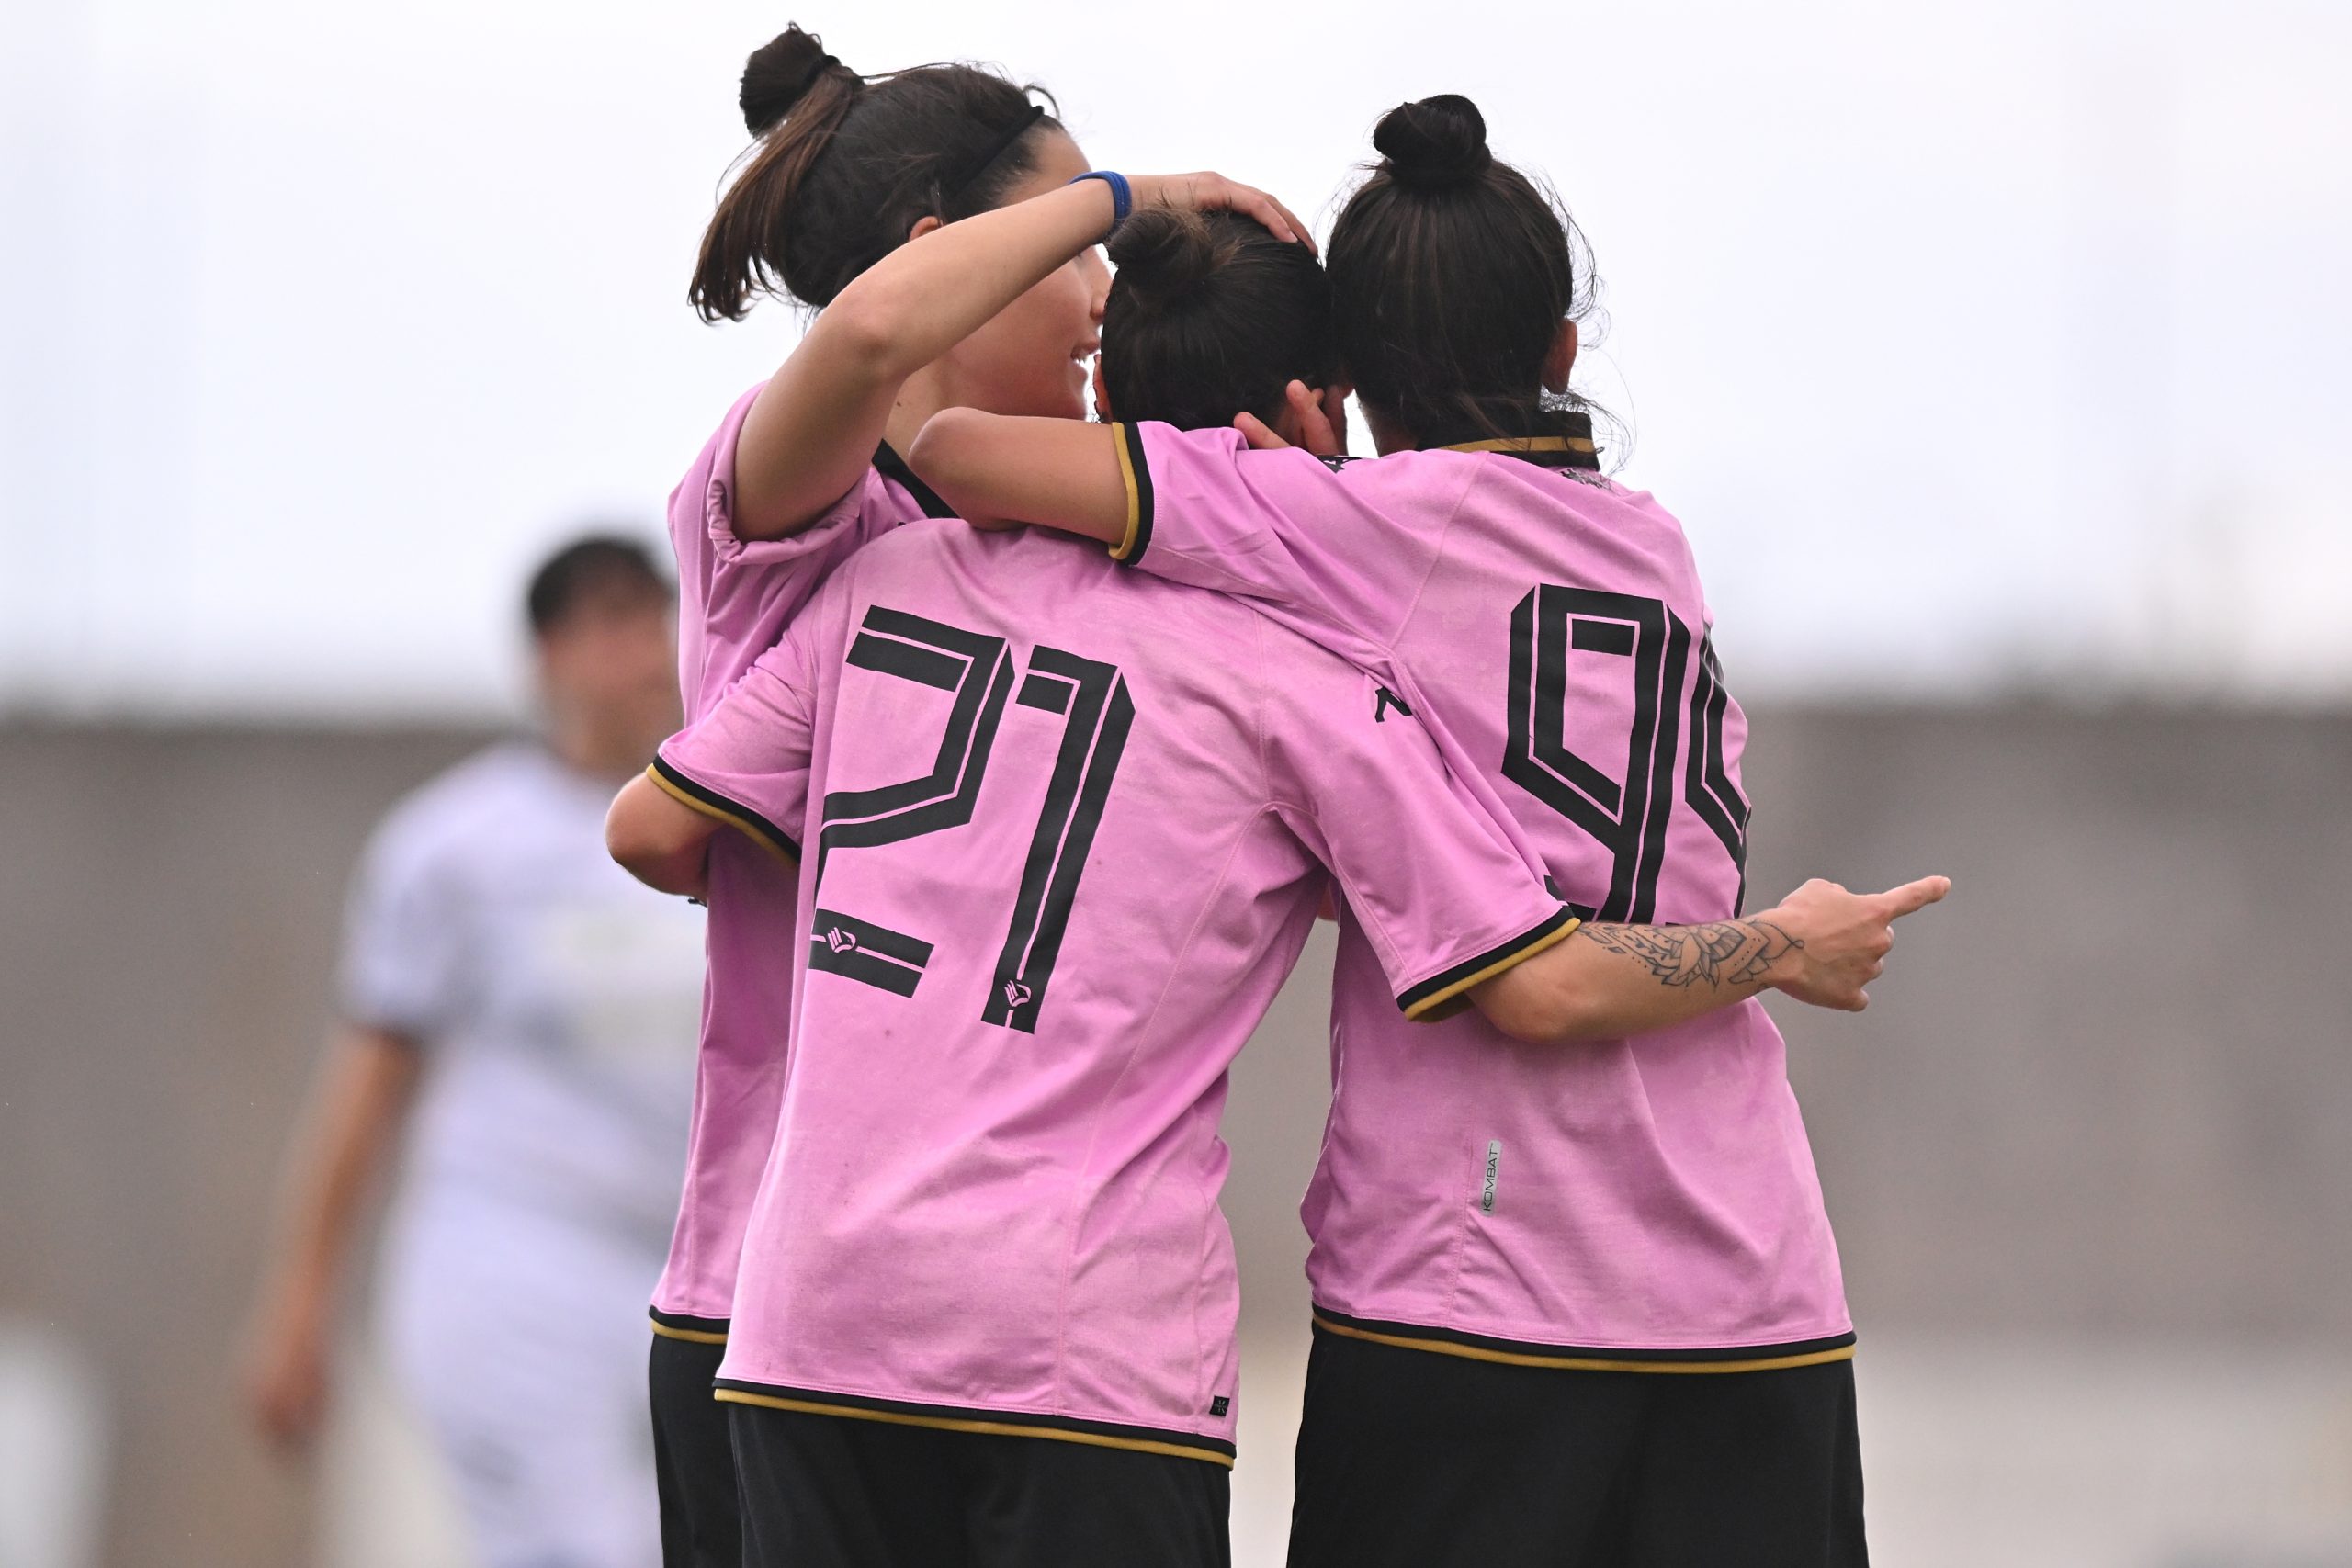 Rinnovata la partnership tra Palermo FC e ASD Palermo calcio femminile - Palermo  F.C.